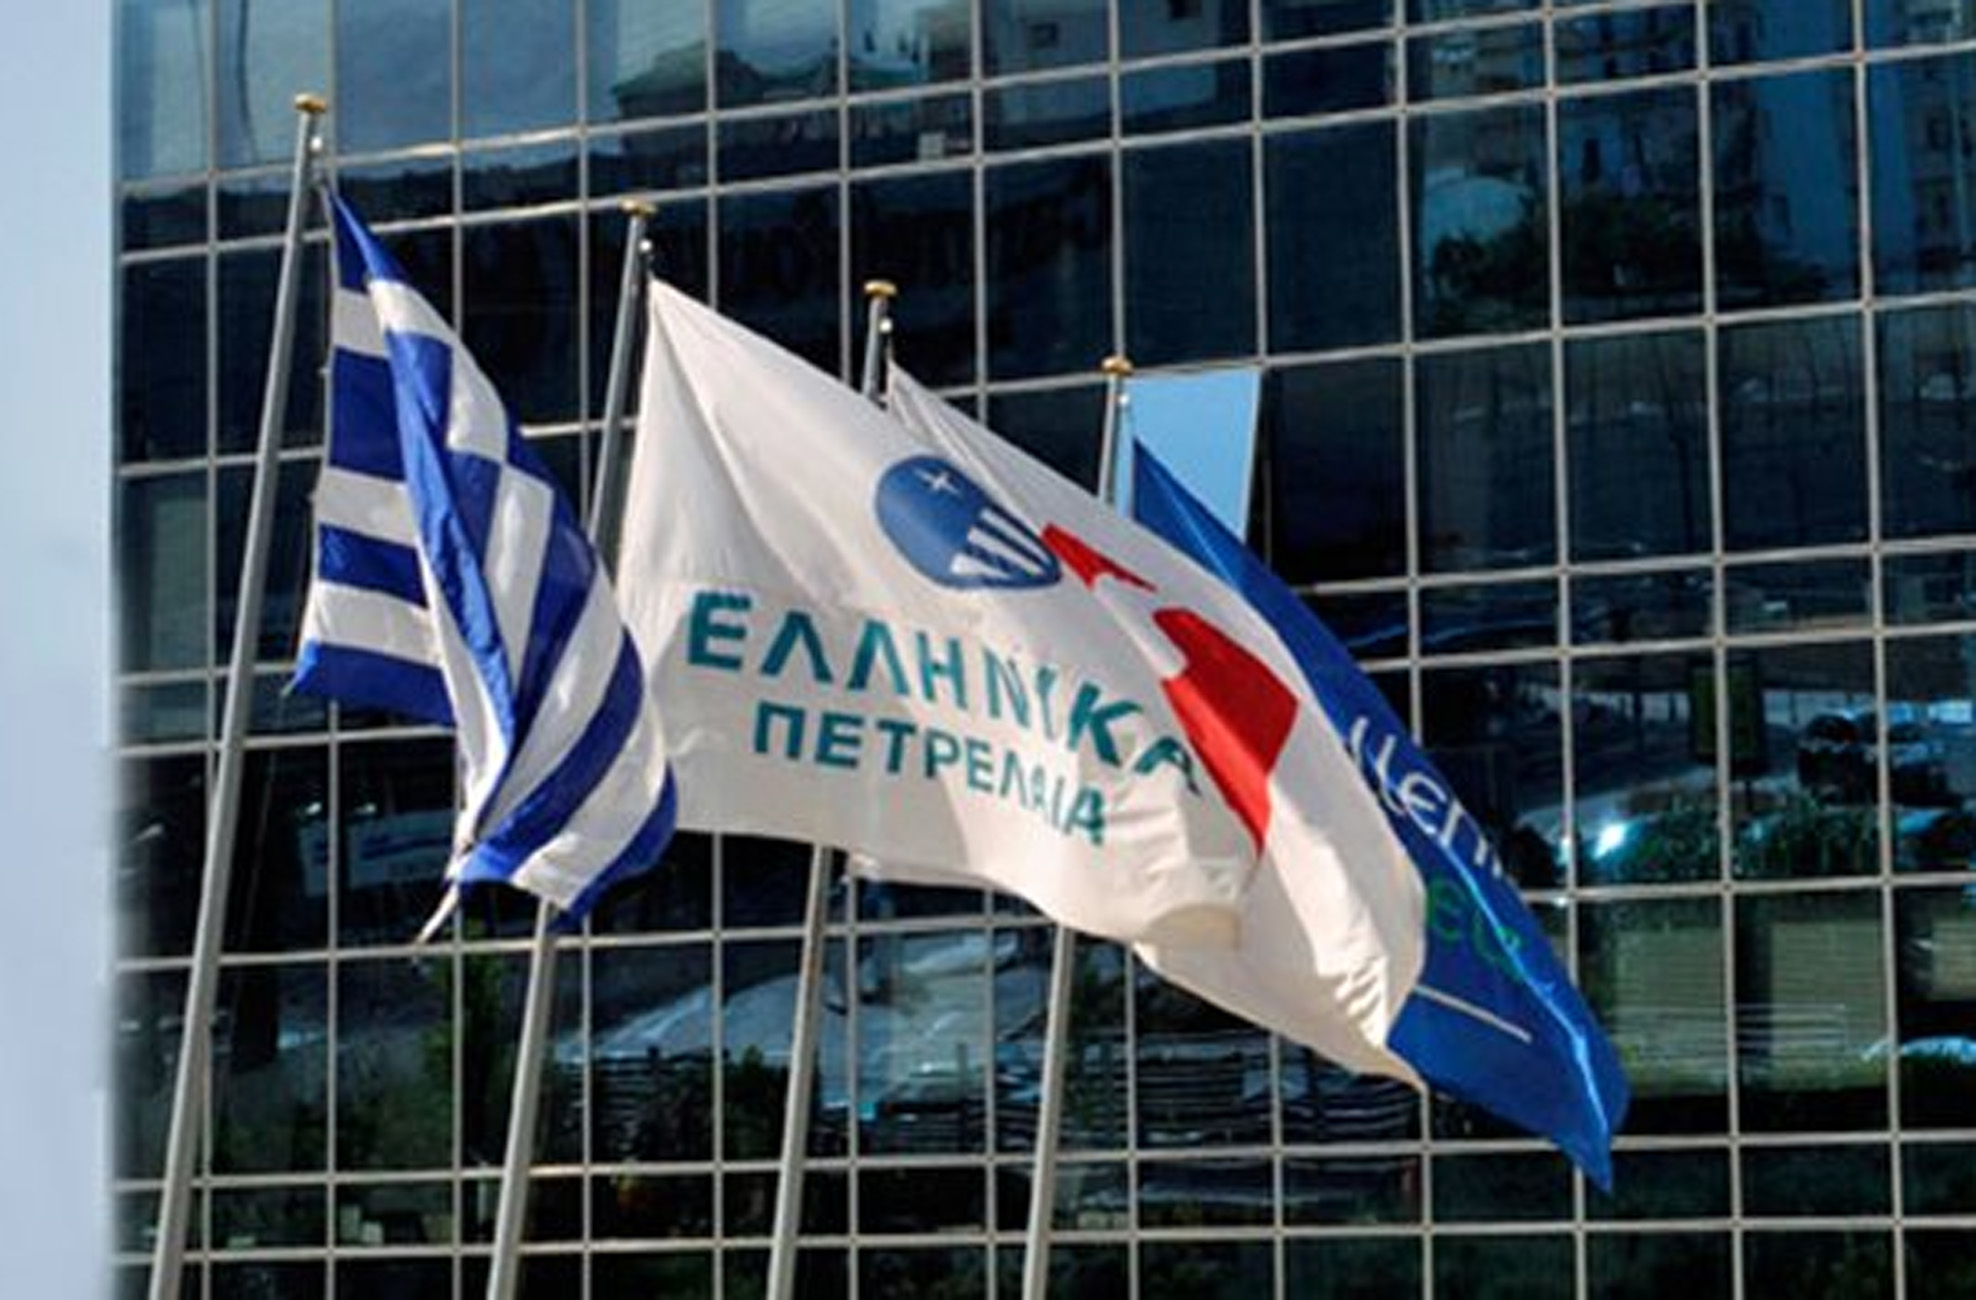 Ελληνικά Πετρέλαια: Θετικά λειτουργικά αποτελέσματα και αύξηση εξαγωγών το 2020, παρά την κρίση λόγω COVID-19